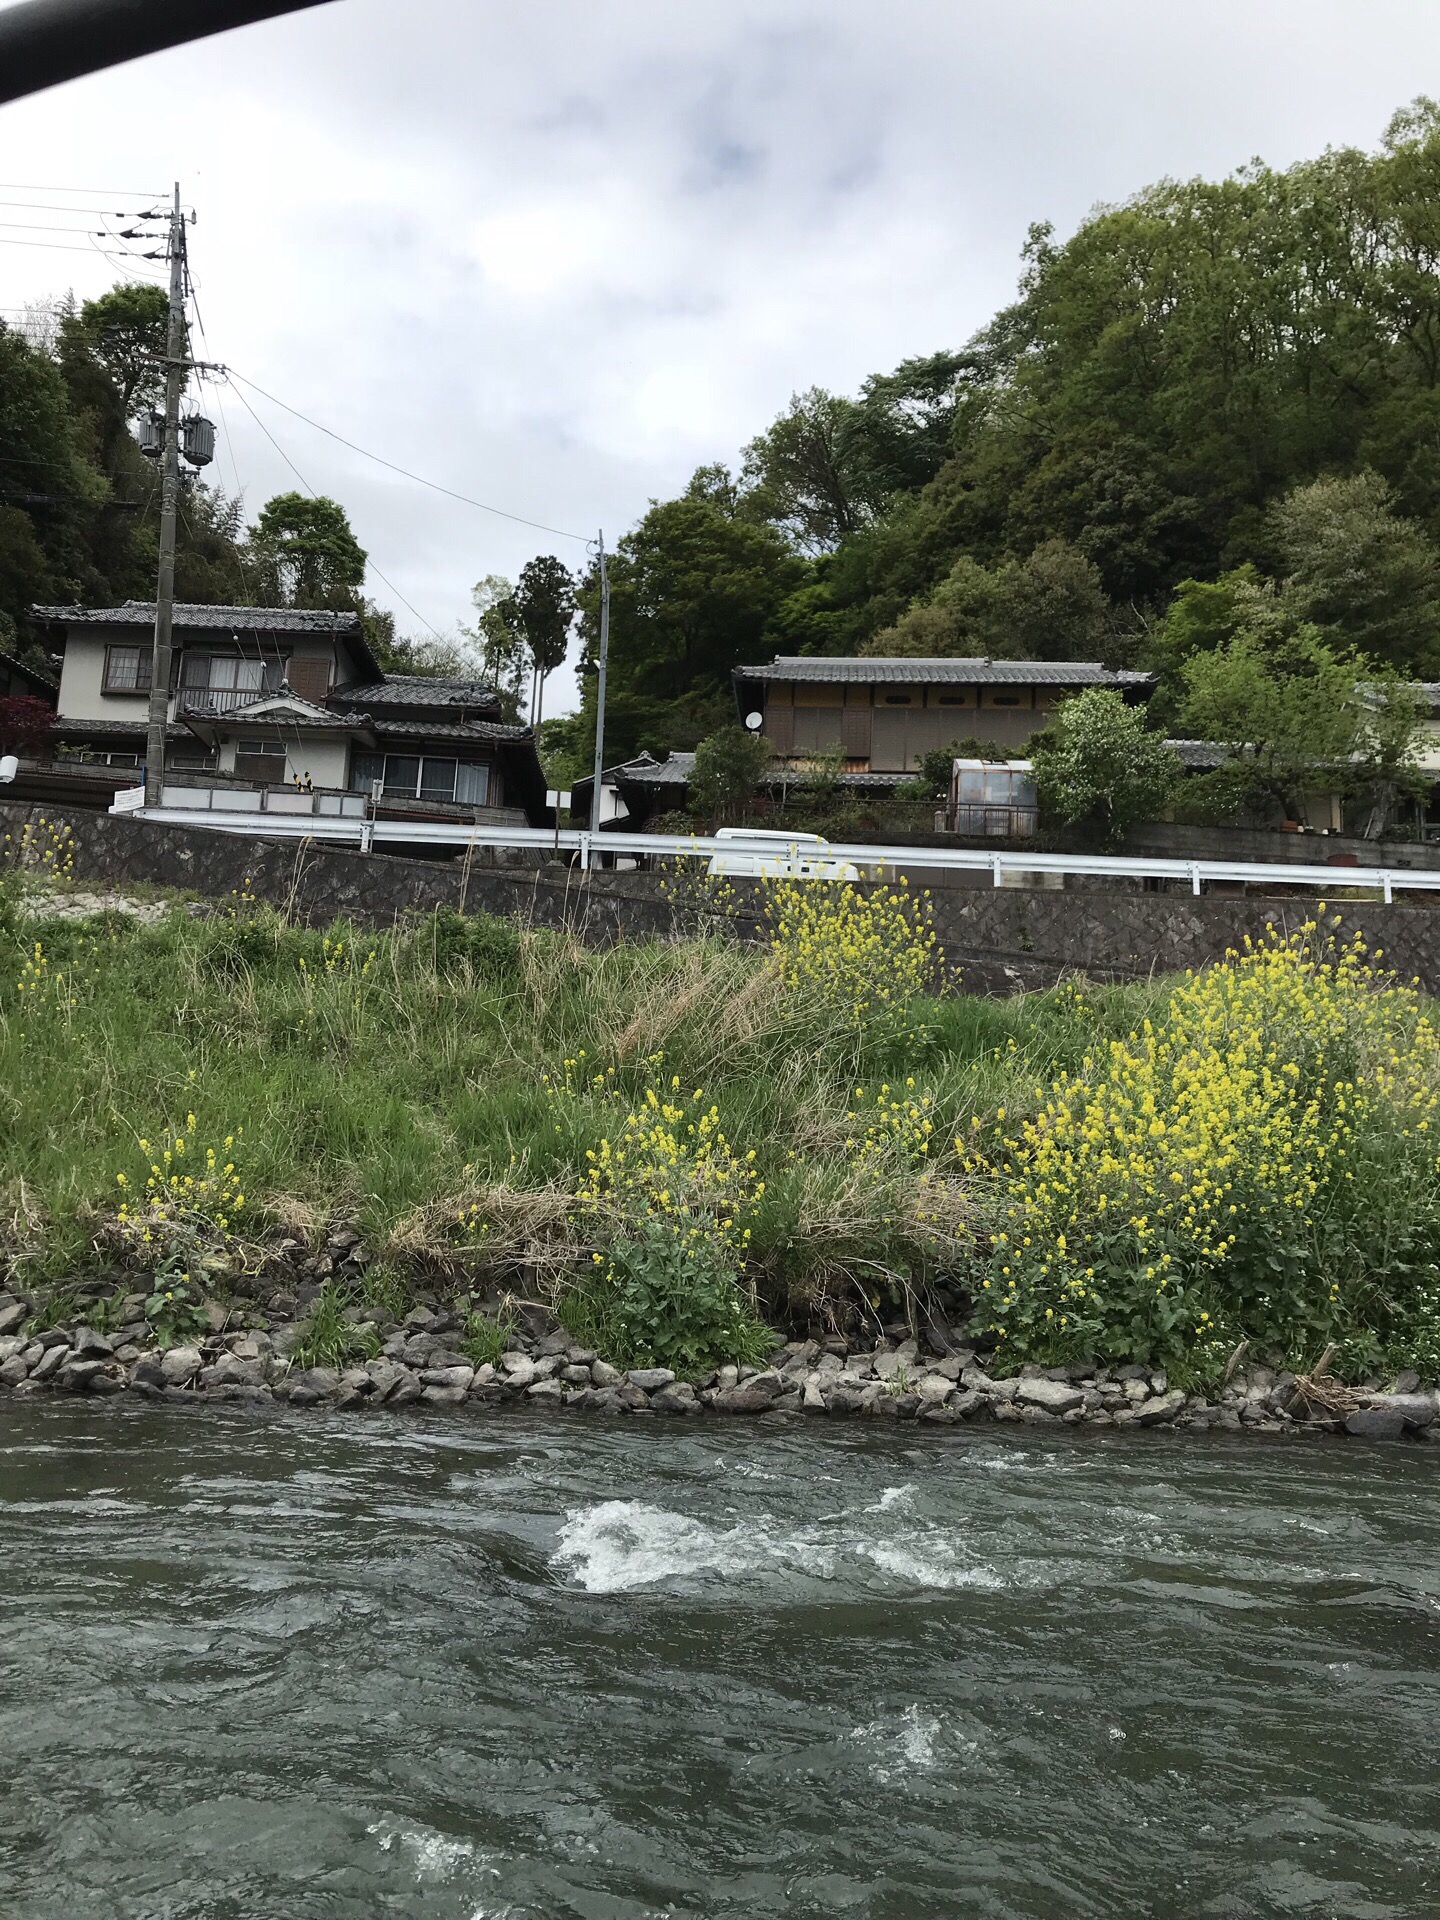 河水清澈，两岸是高耸的竹子，经台风扫荡两岸的竹子树成片倒下，日本政府规定倒掉的竹子任其自由风化成肥，